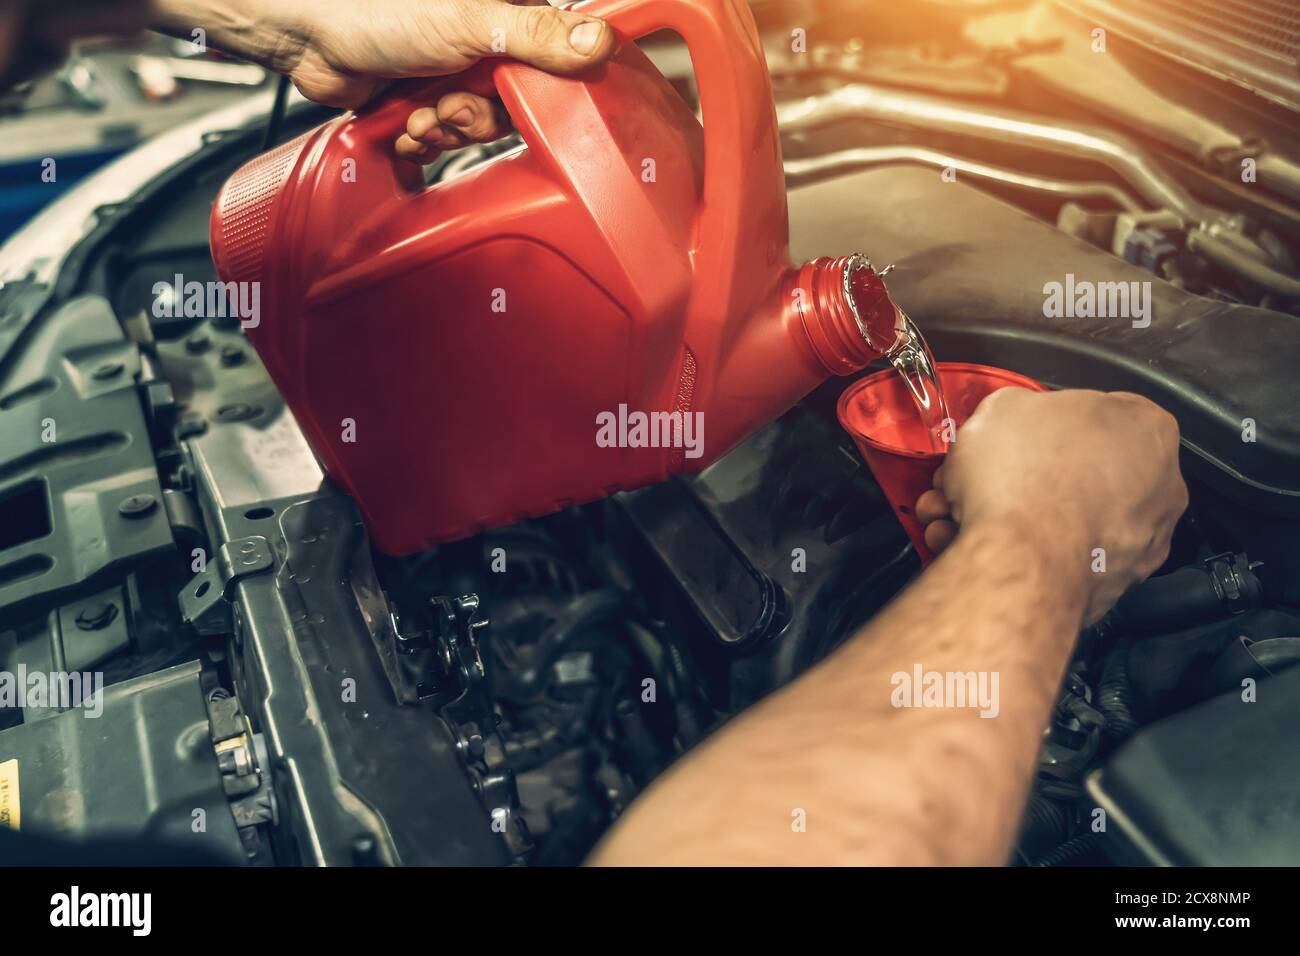 Arbeiter Hände gießt Spülung Motoröl in den Motor, um  Kohlenstoffablagerungen im Auto-Service zu entfernen, korrekte  Timing-Änderung im Auto Stockfotografie - Alamy